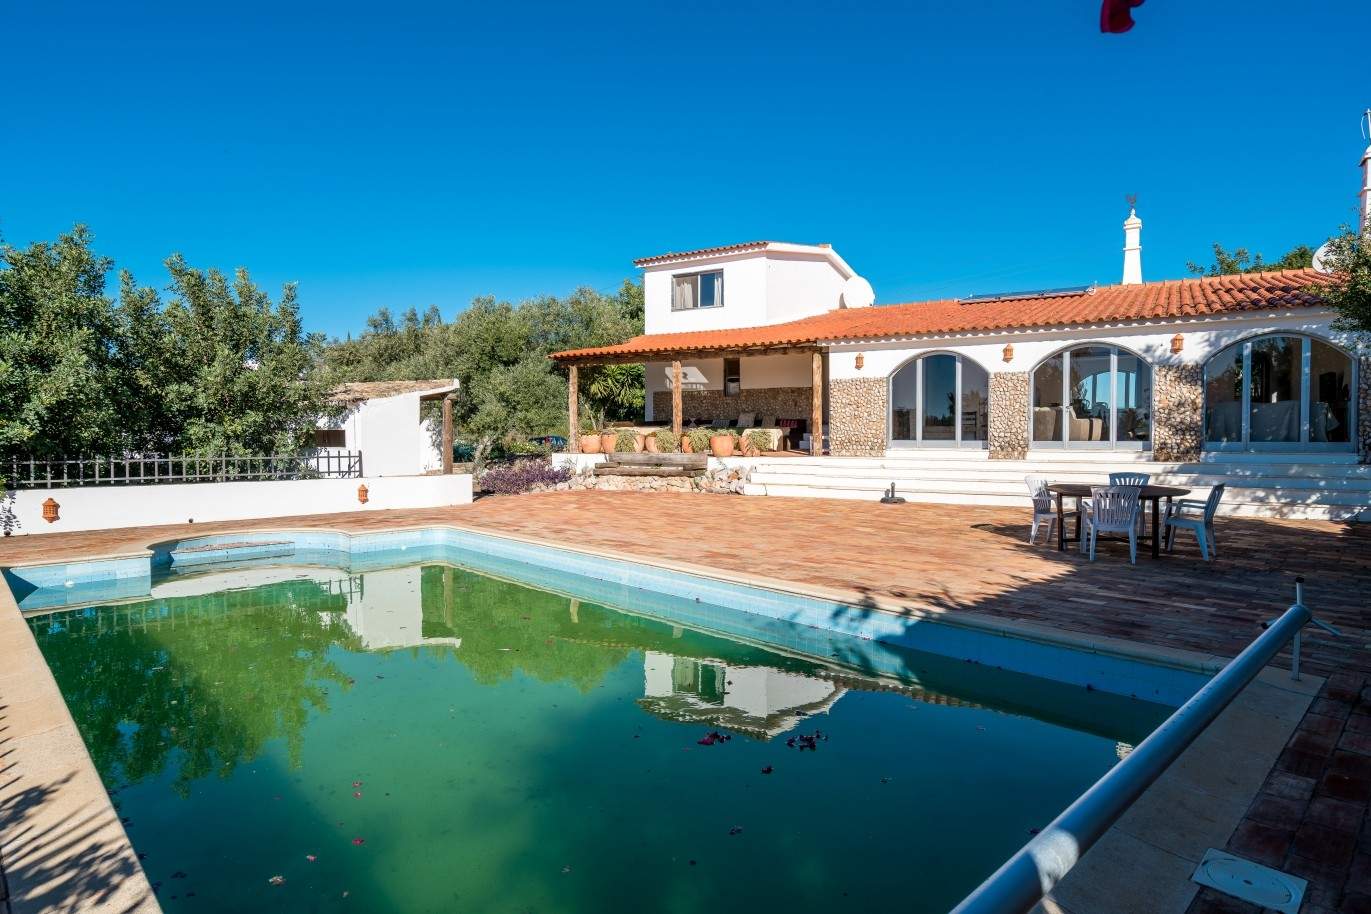 Piso en venta, piscina y tenis, Sta Bárbara de Nexe, Algarve, Portugal_70533